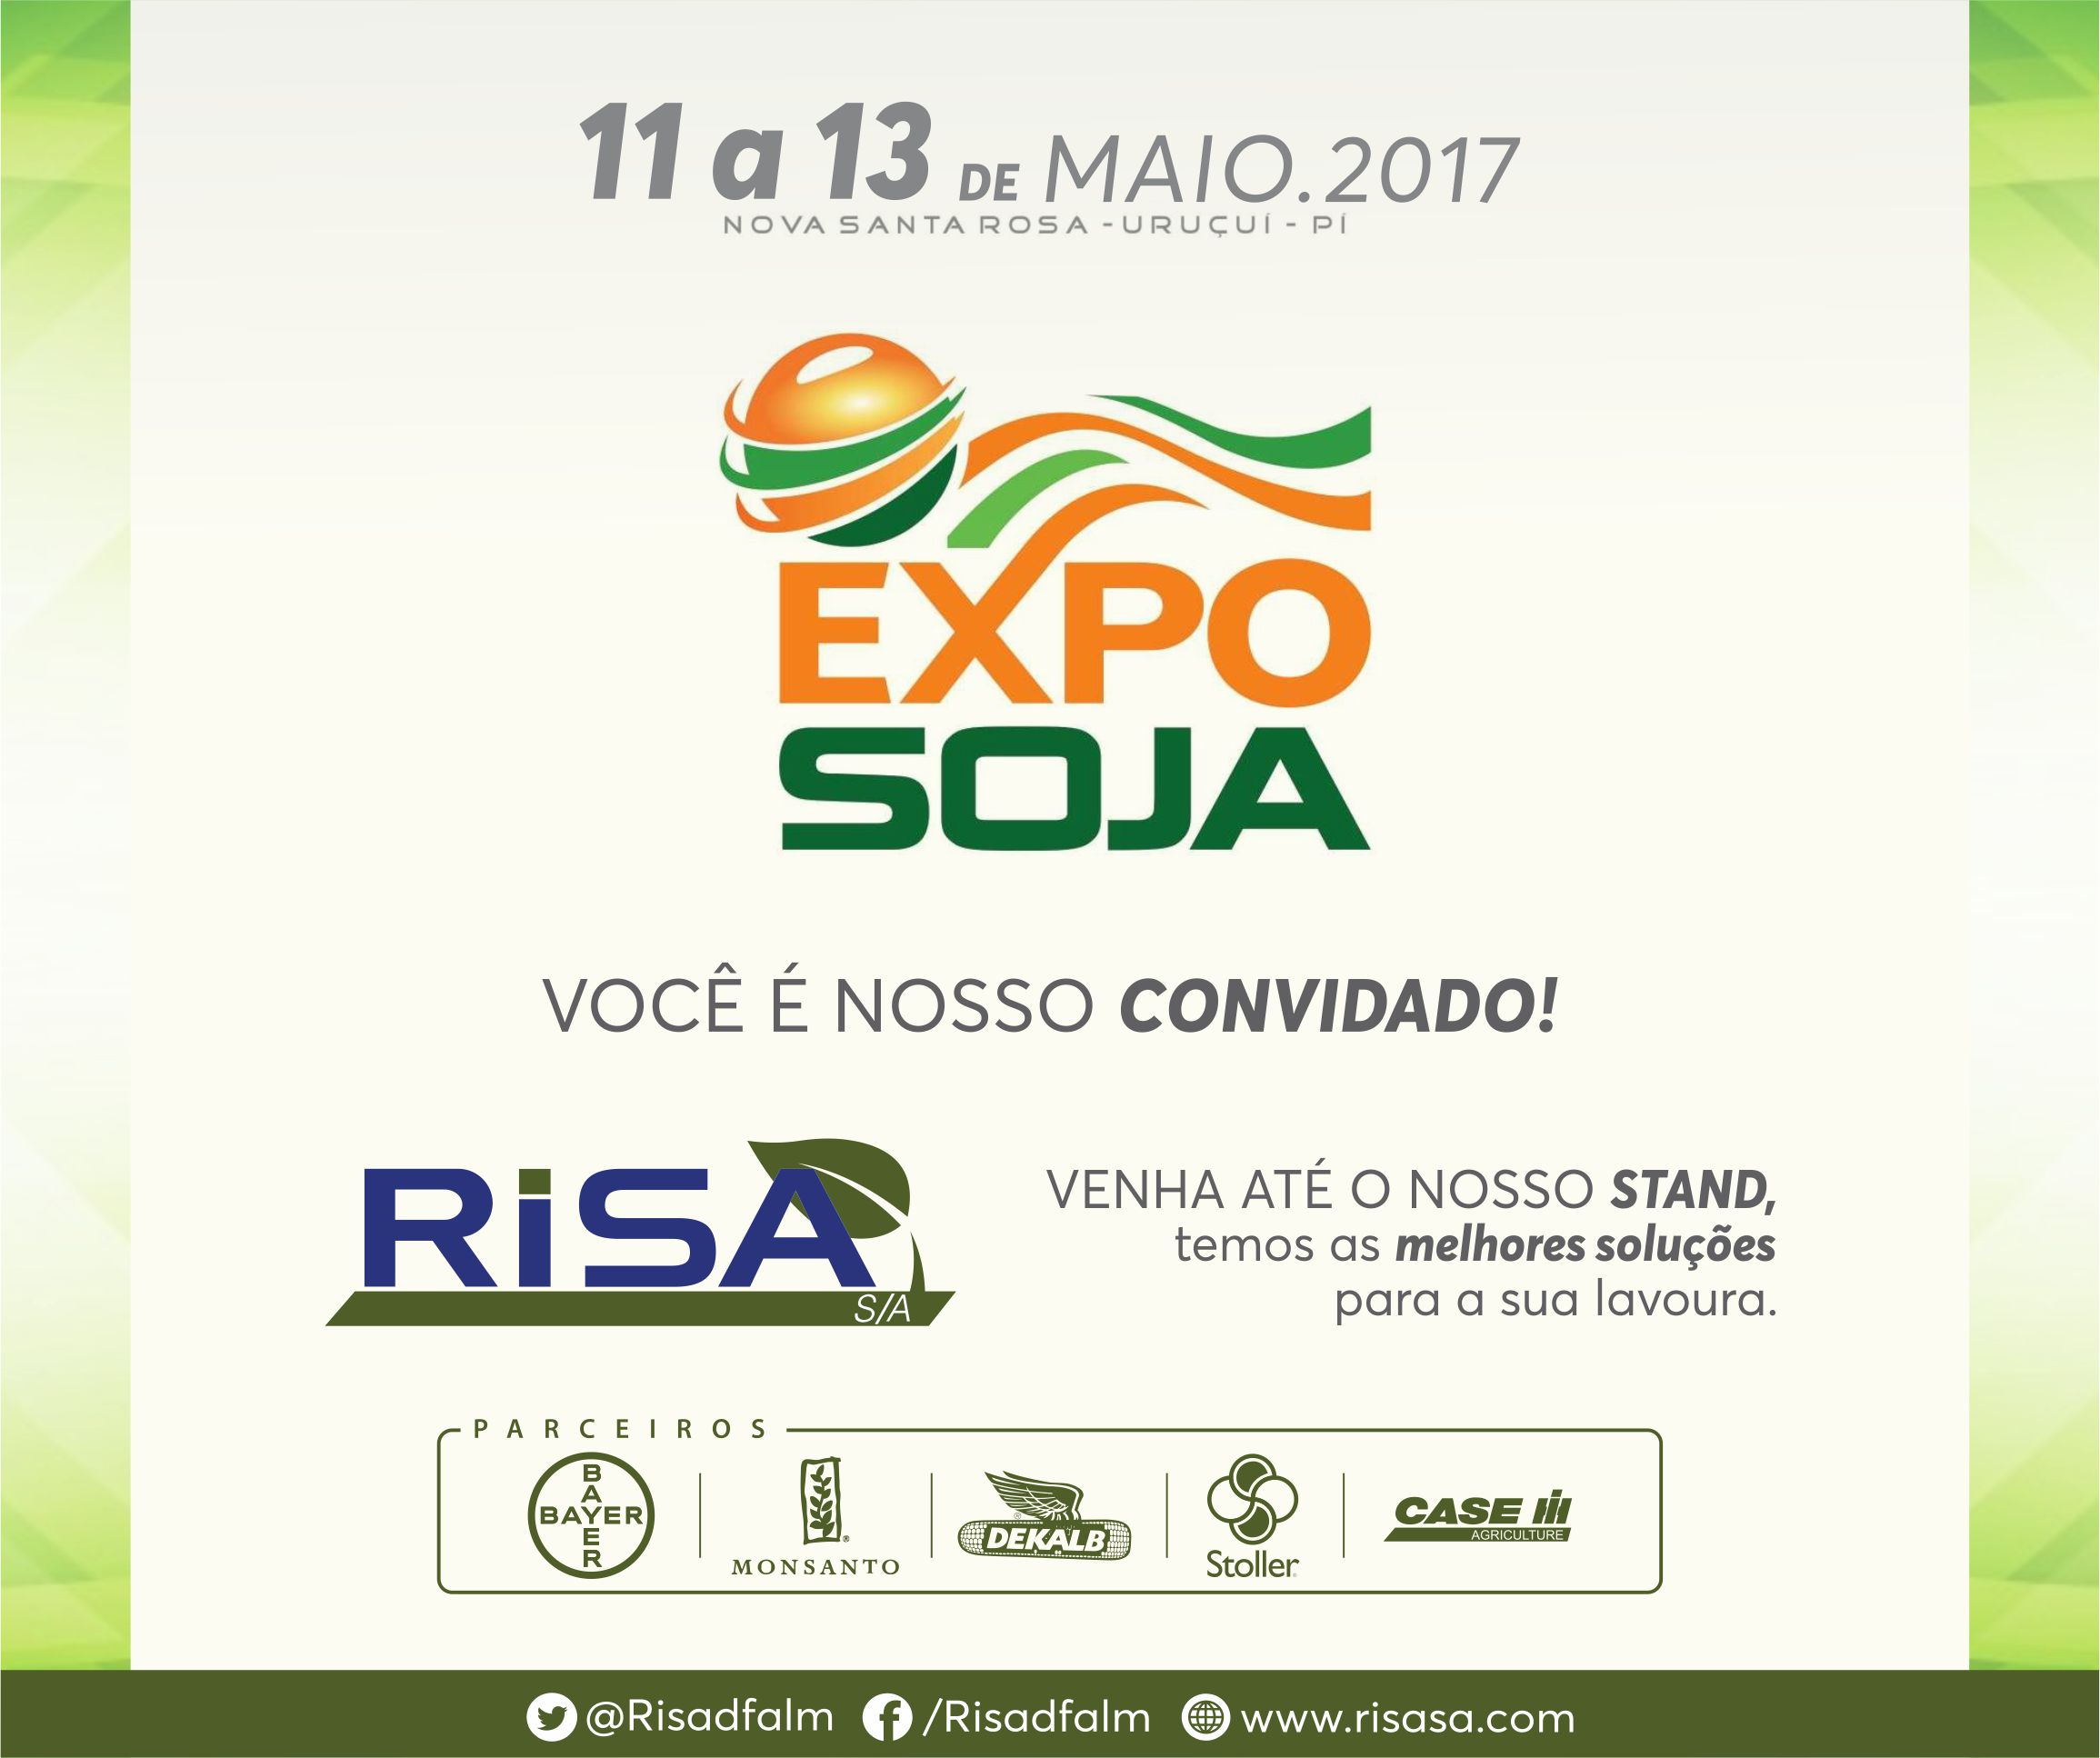 ExpoSoja 2017 – Feira de Nova Santa Rosa